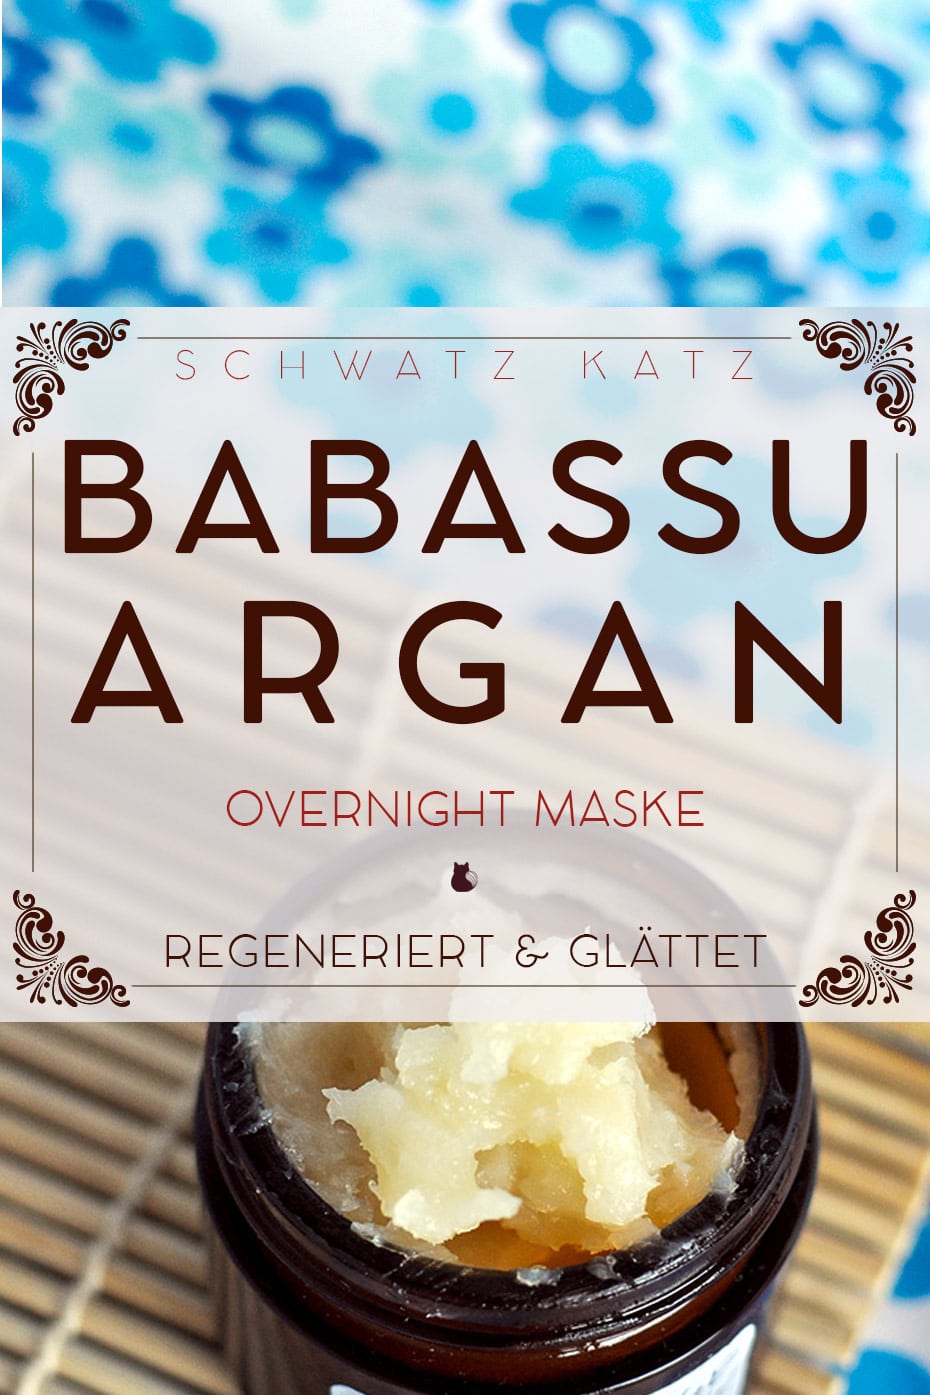 Glättende Babassu-Argan Maske | Schwatz Katz